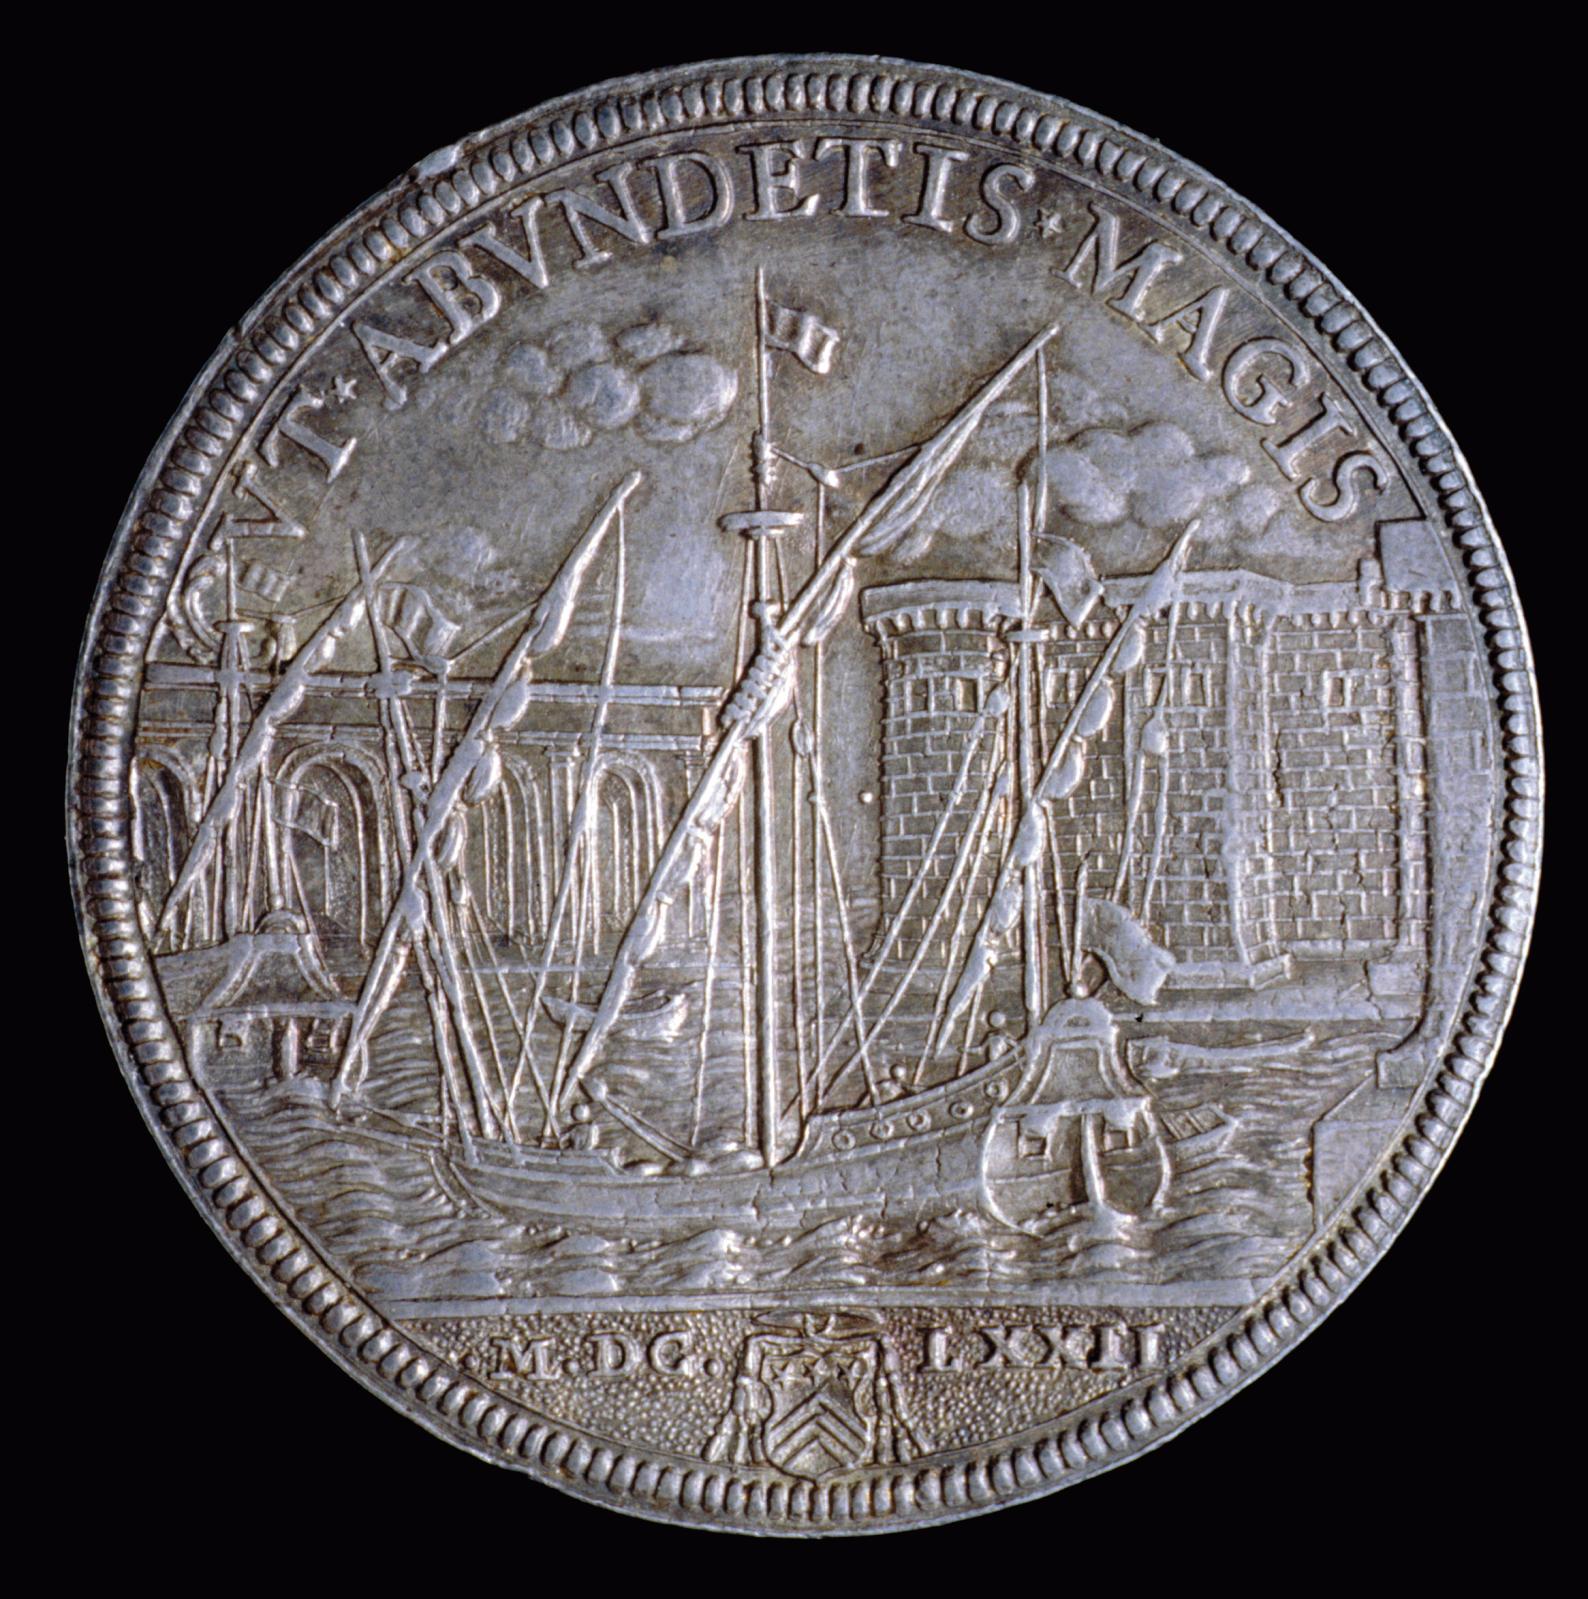 Piastre en argent montrant une vue du port de Civitavecchia, frappée à Rome dans l’atelier du pape Clément X en 1672. Courtesy Medagliere 